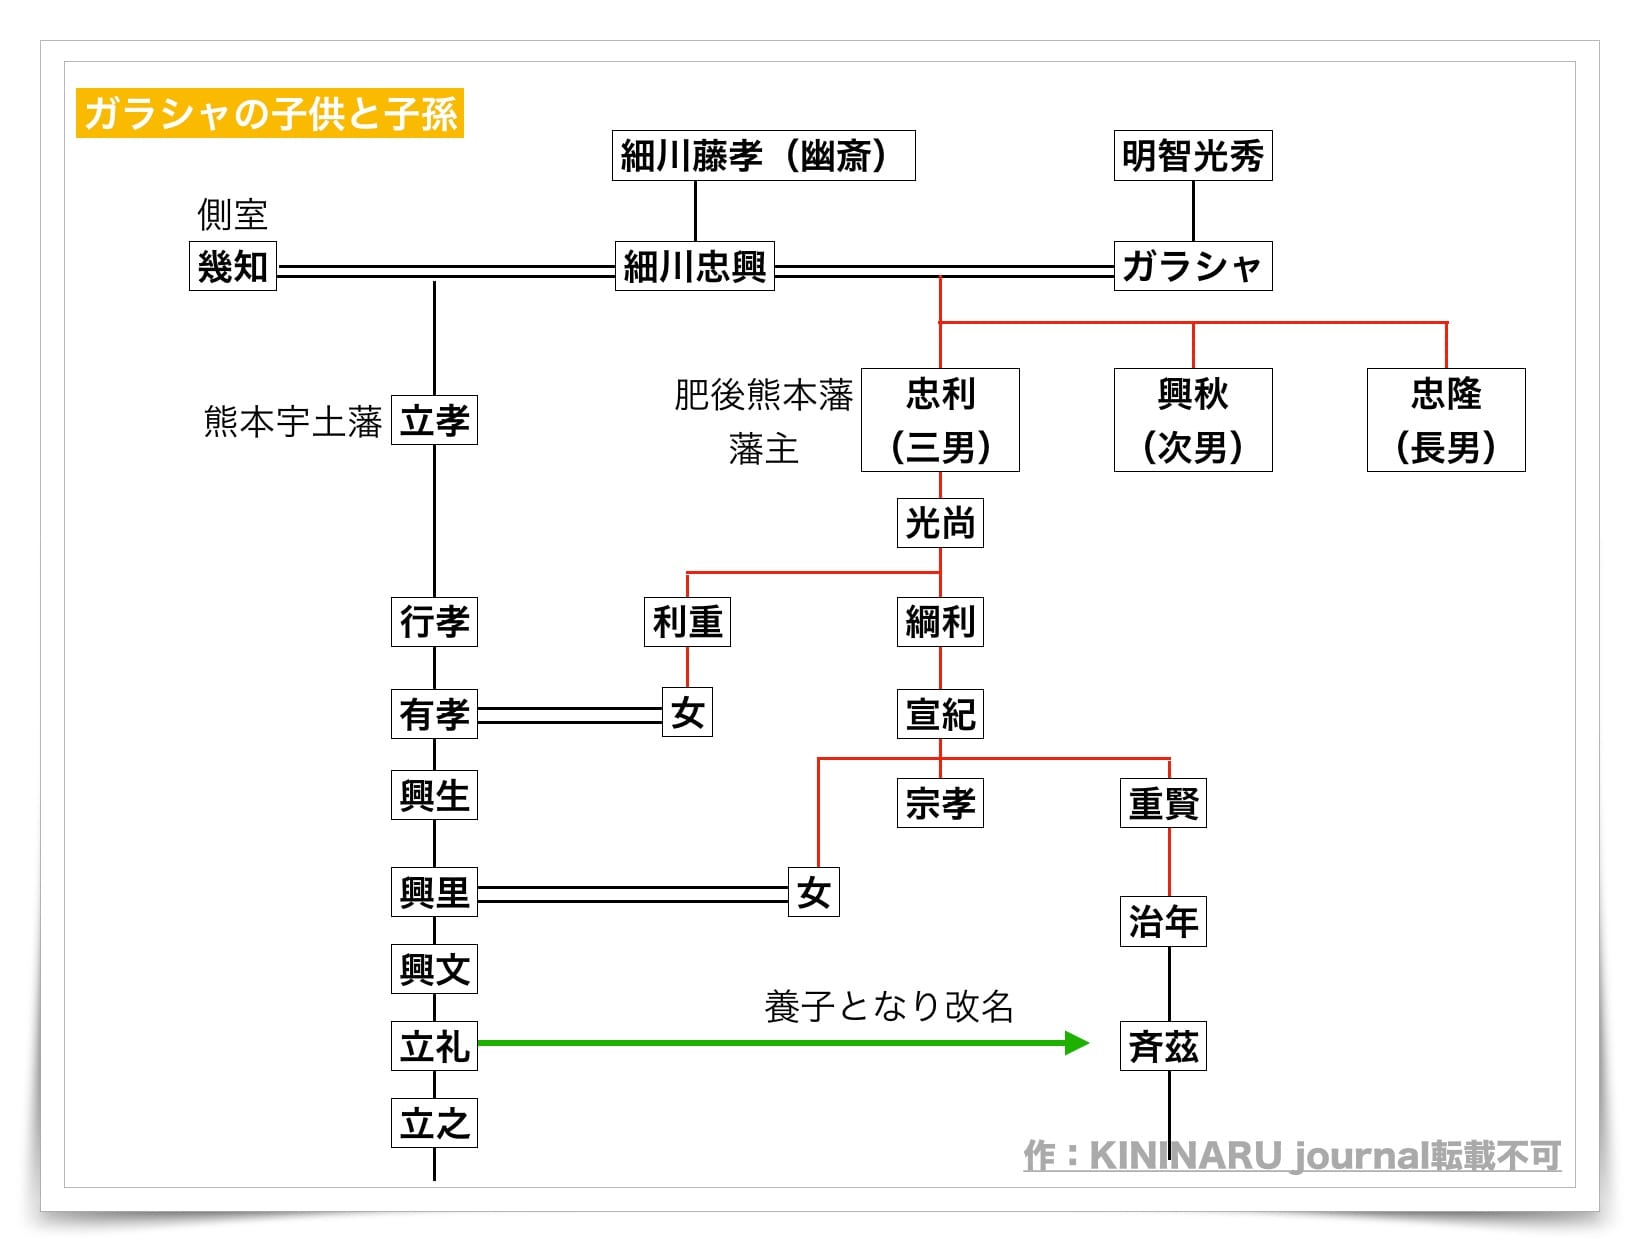 細川ガラシャの家系図